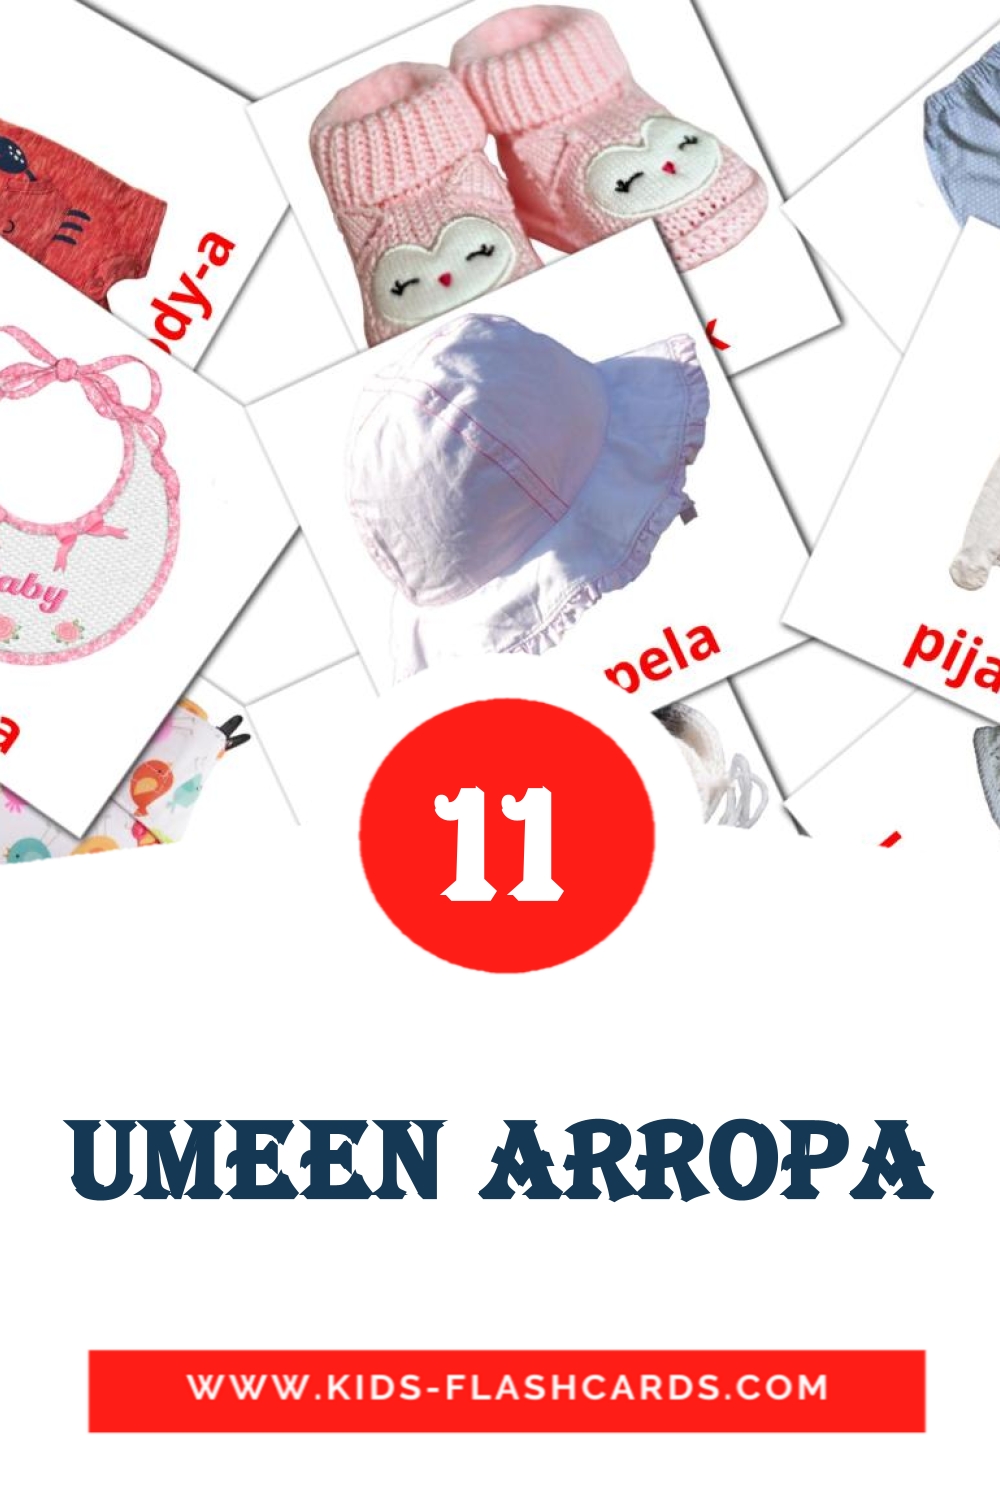 11 tarjetas didacticas de umeen arropa para el jardín de infancia en euskera